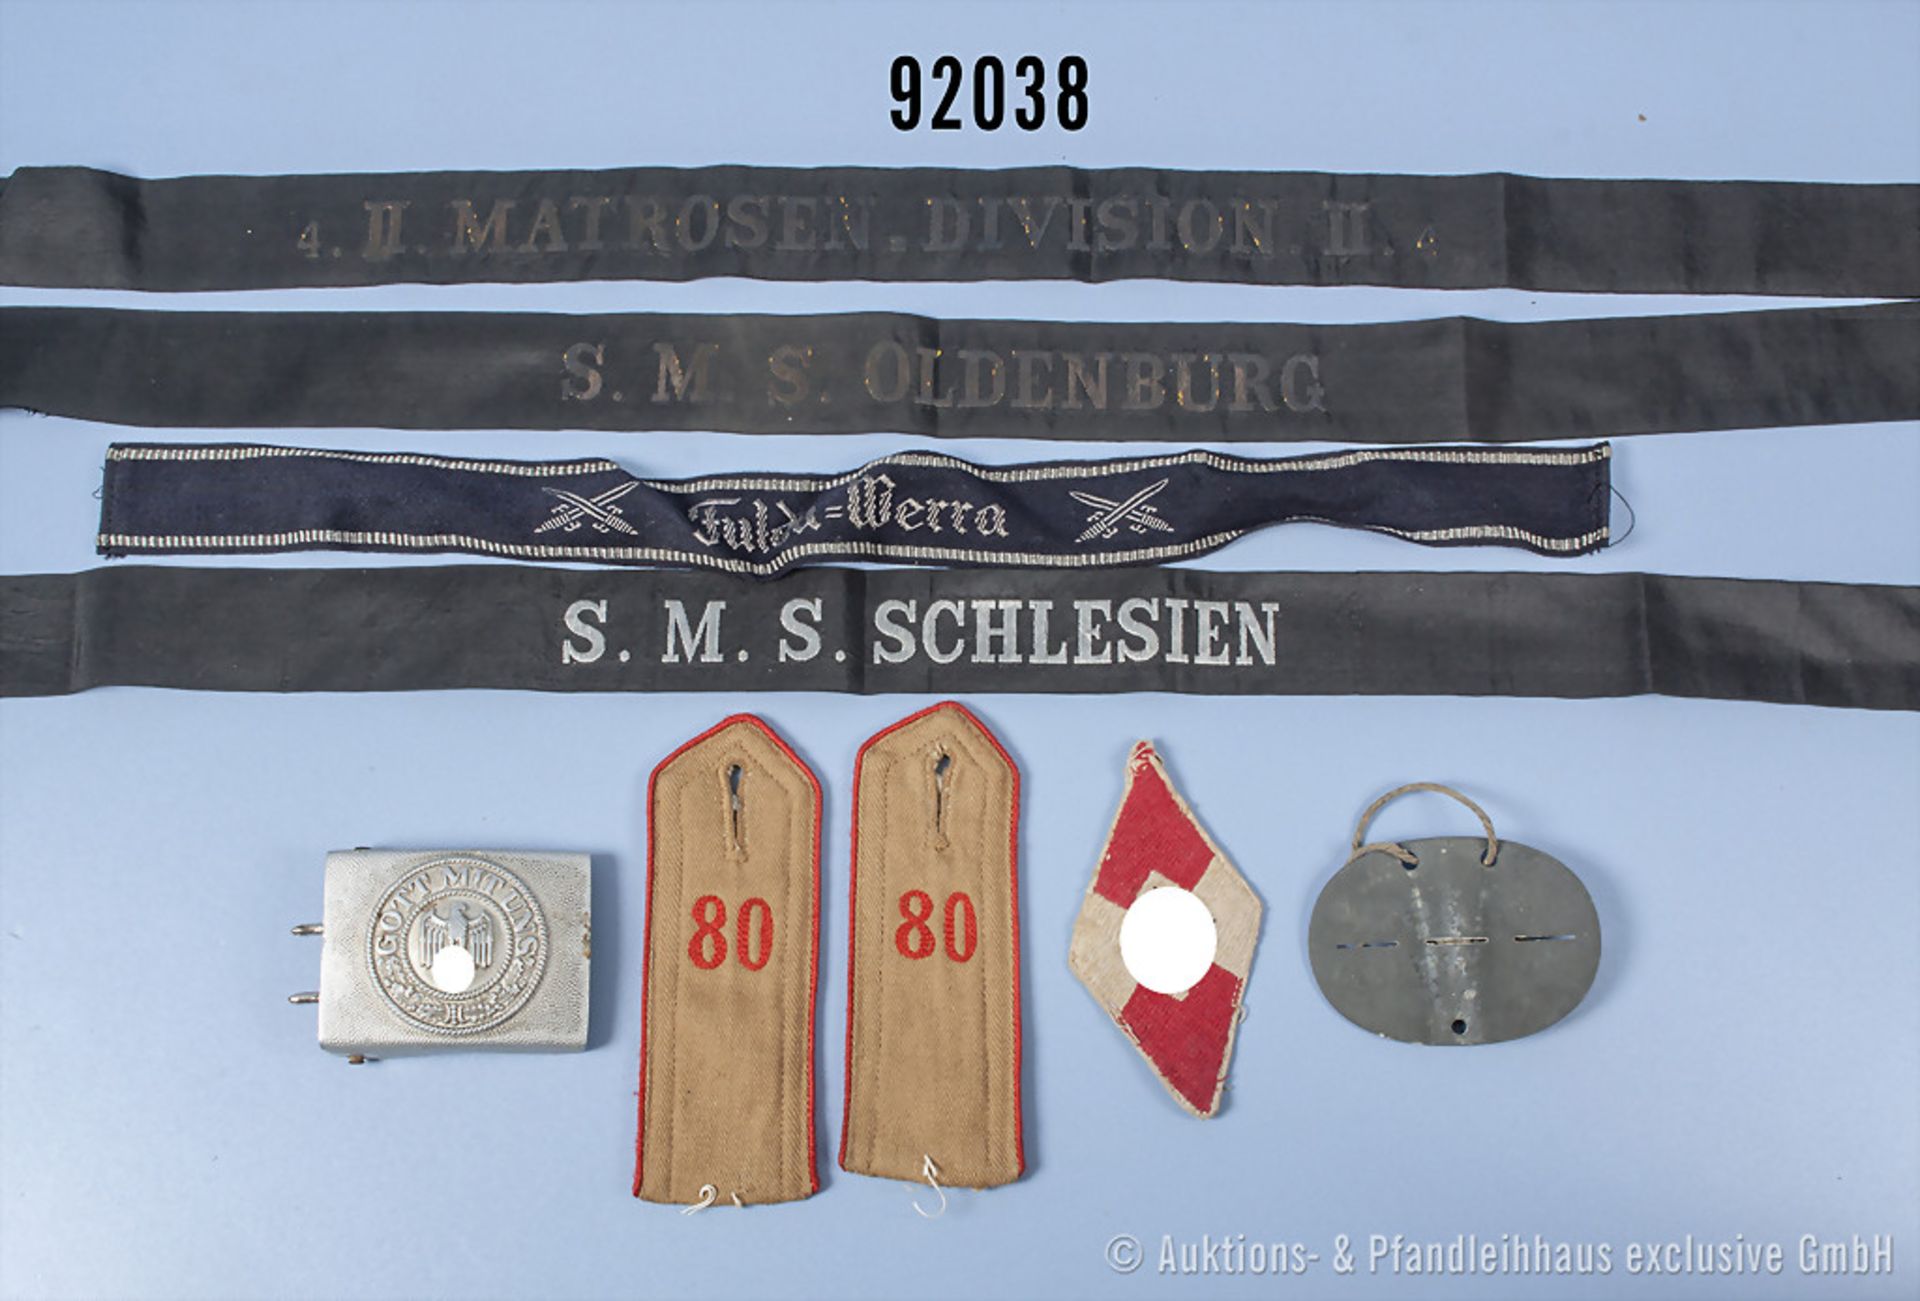 Konv. 3 Mützenbänder "SMS Schlesien", "SMS Oldenburg" und "4. II. Matrosendivision ...